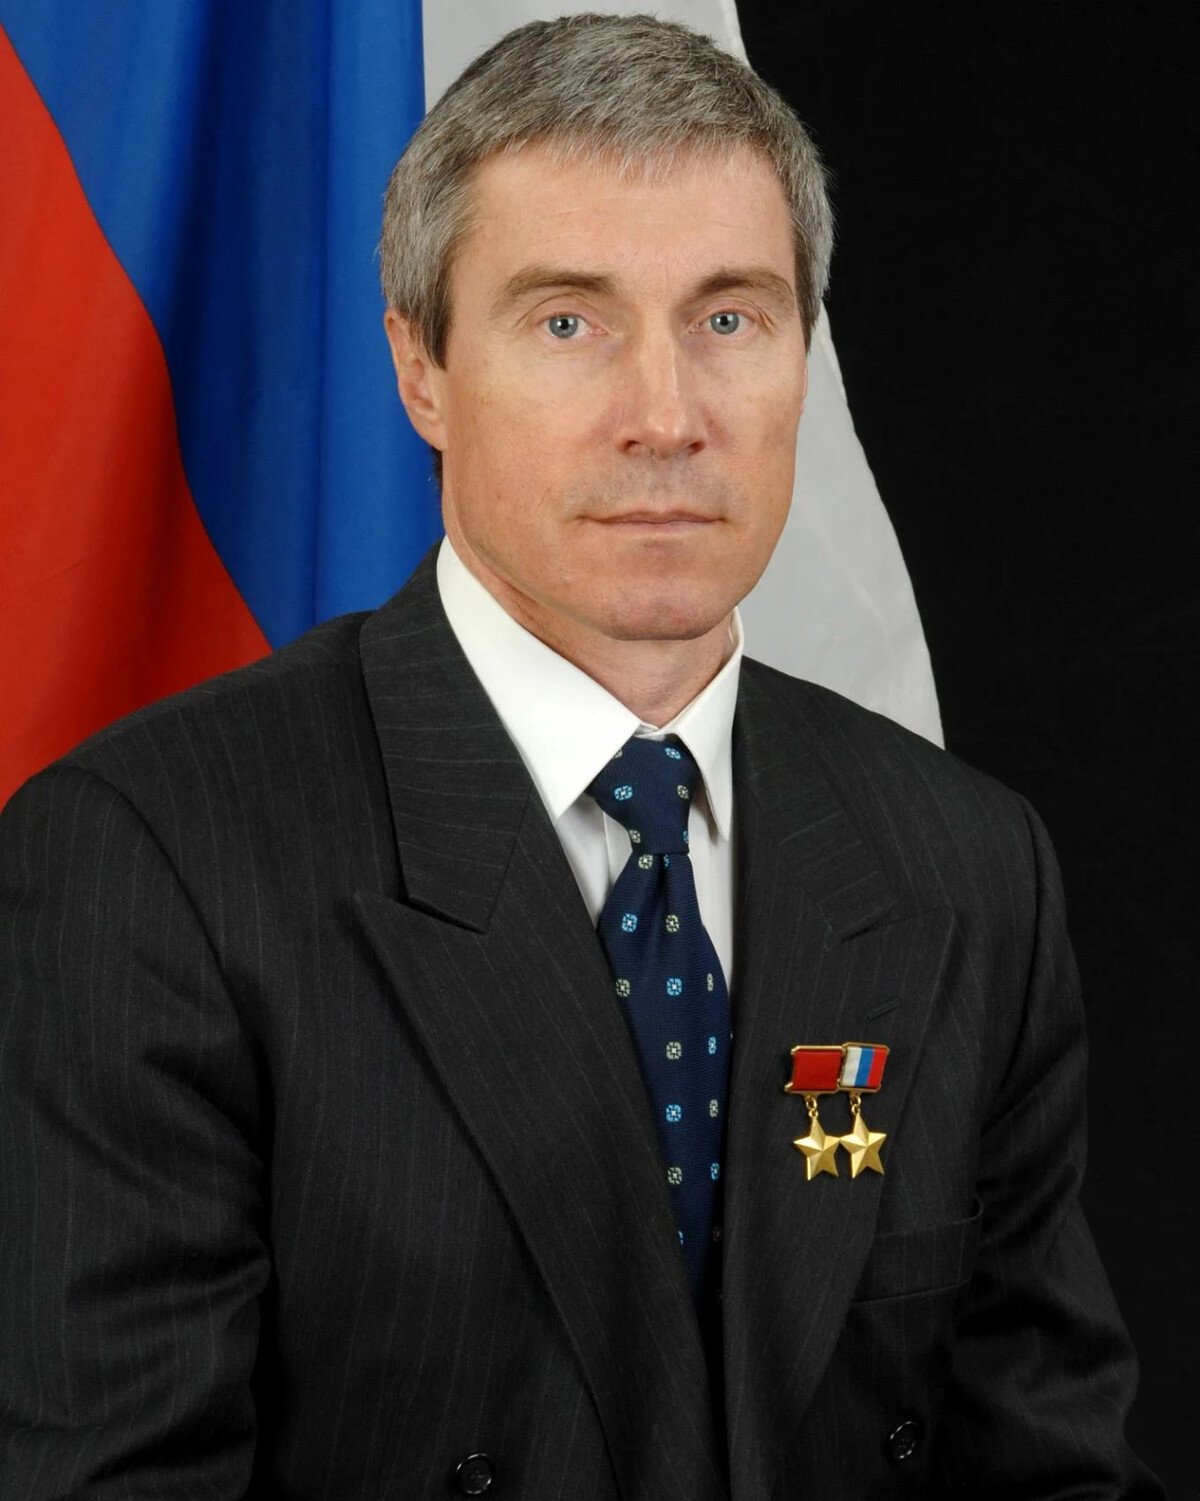 Серге́й Константинович Крикалёв